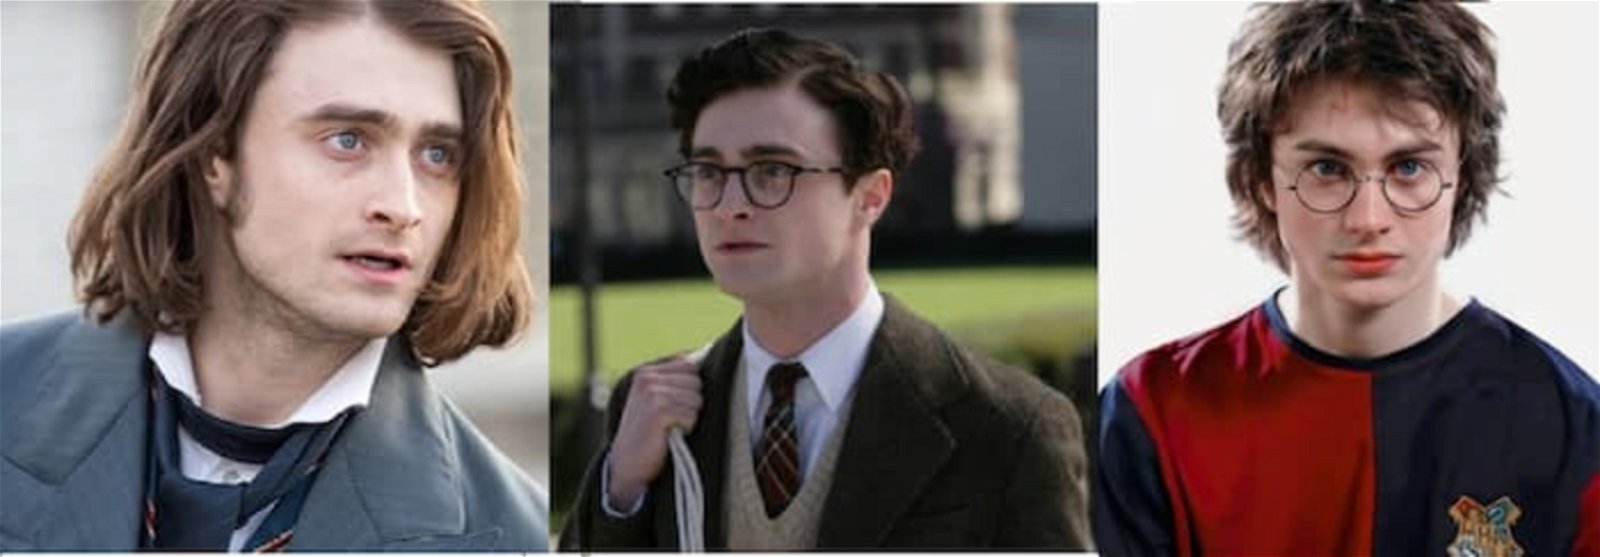 Daniel Radcliffe en Victor Frankenstein, Amores Asesinos, y como Harry Potter